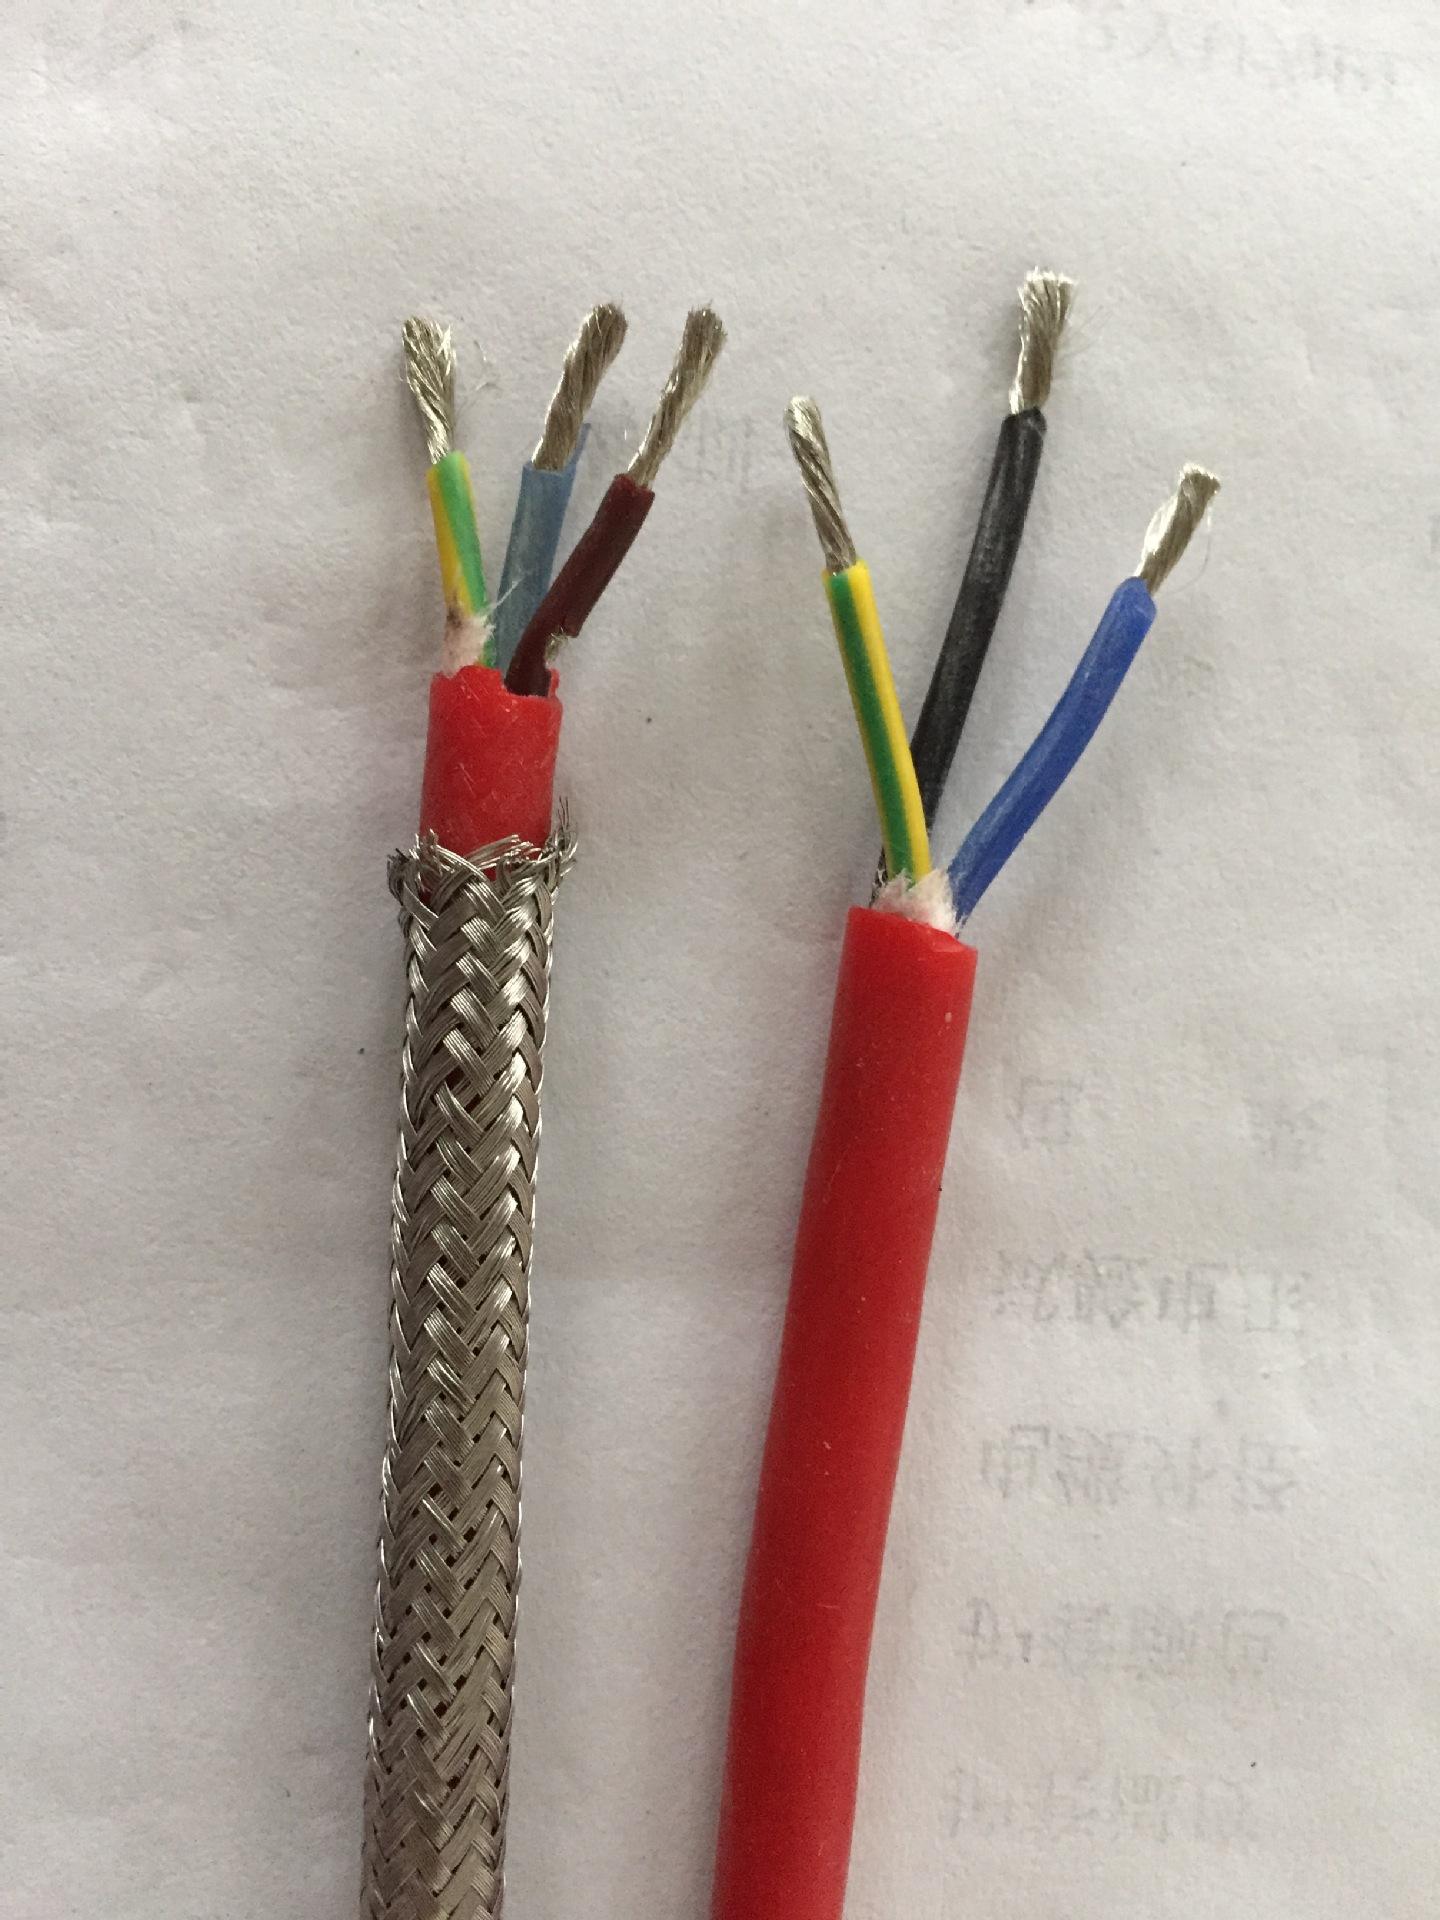 YGGB-16x1.5耐高温电缆型号解释